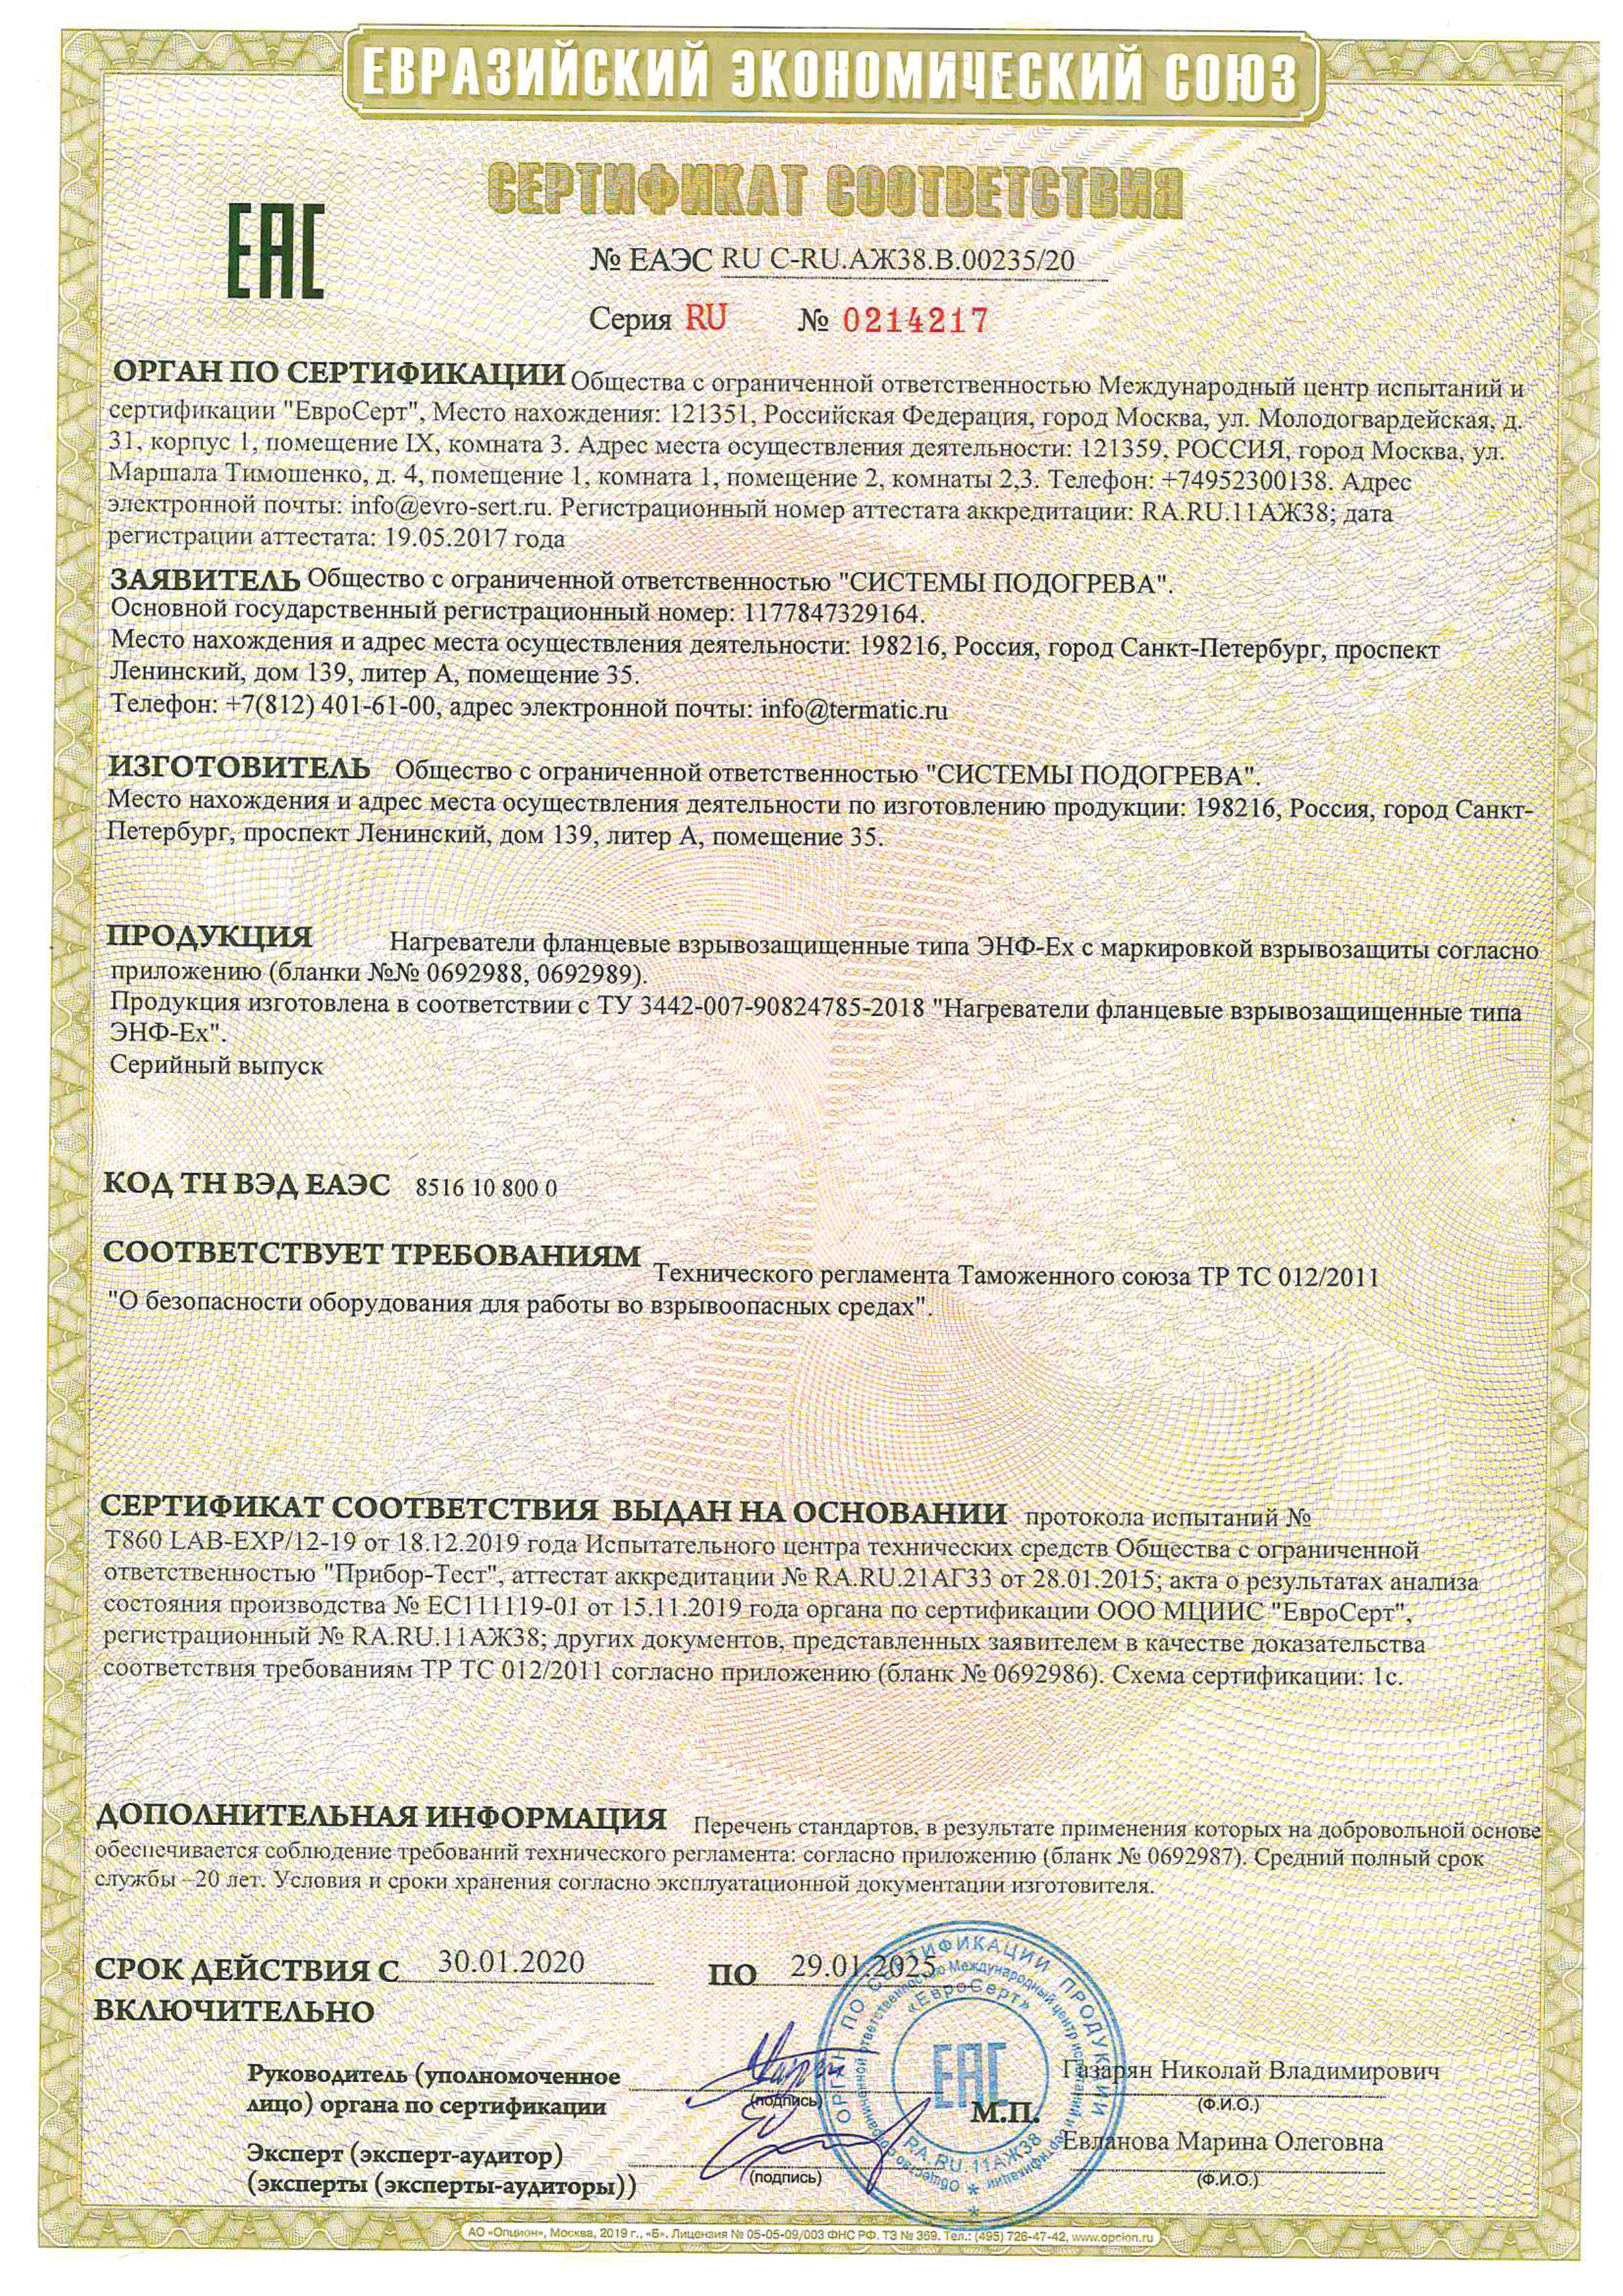  Сертификат ТР ТС 012/2011 «О безопасности оборудования для работы во взрывоопасных средах» на нагреватели взрывозащищенные типа ЭНФ-Ех